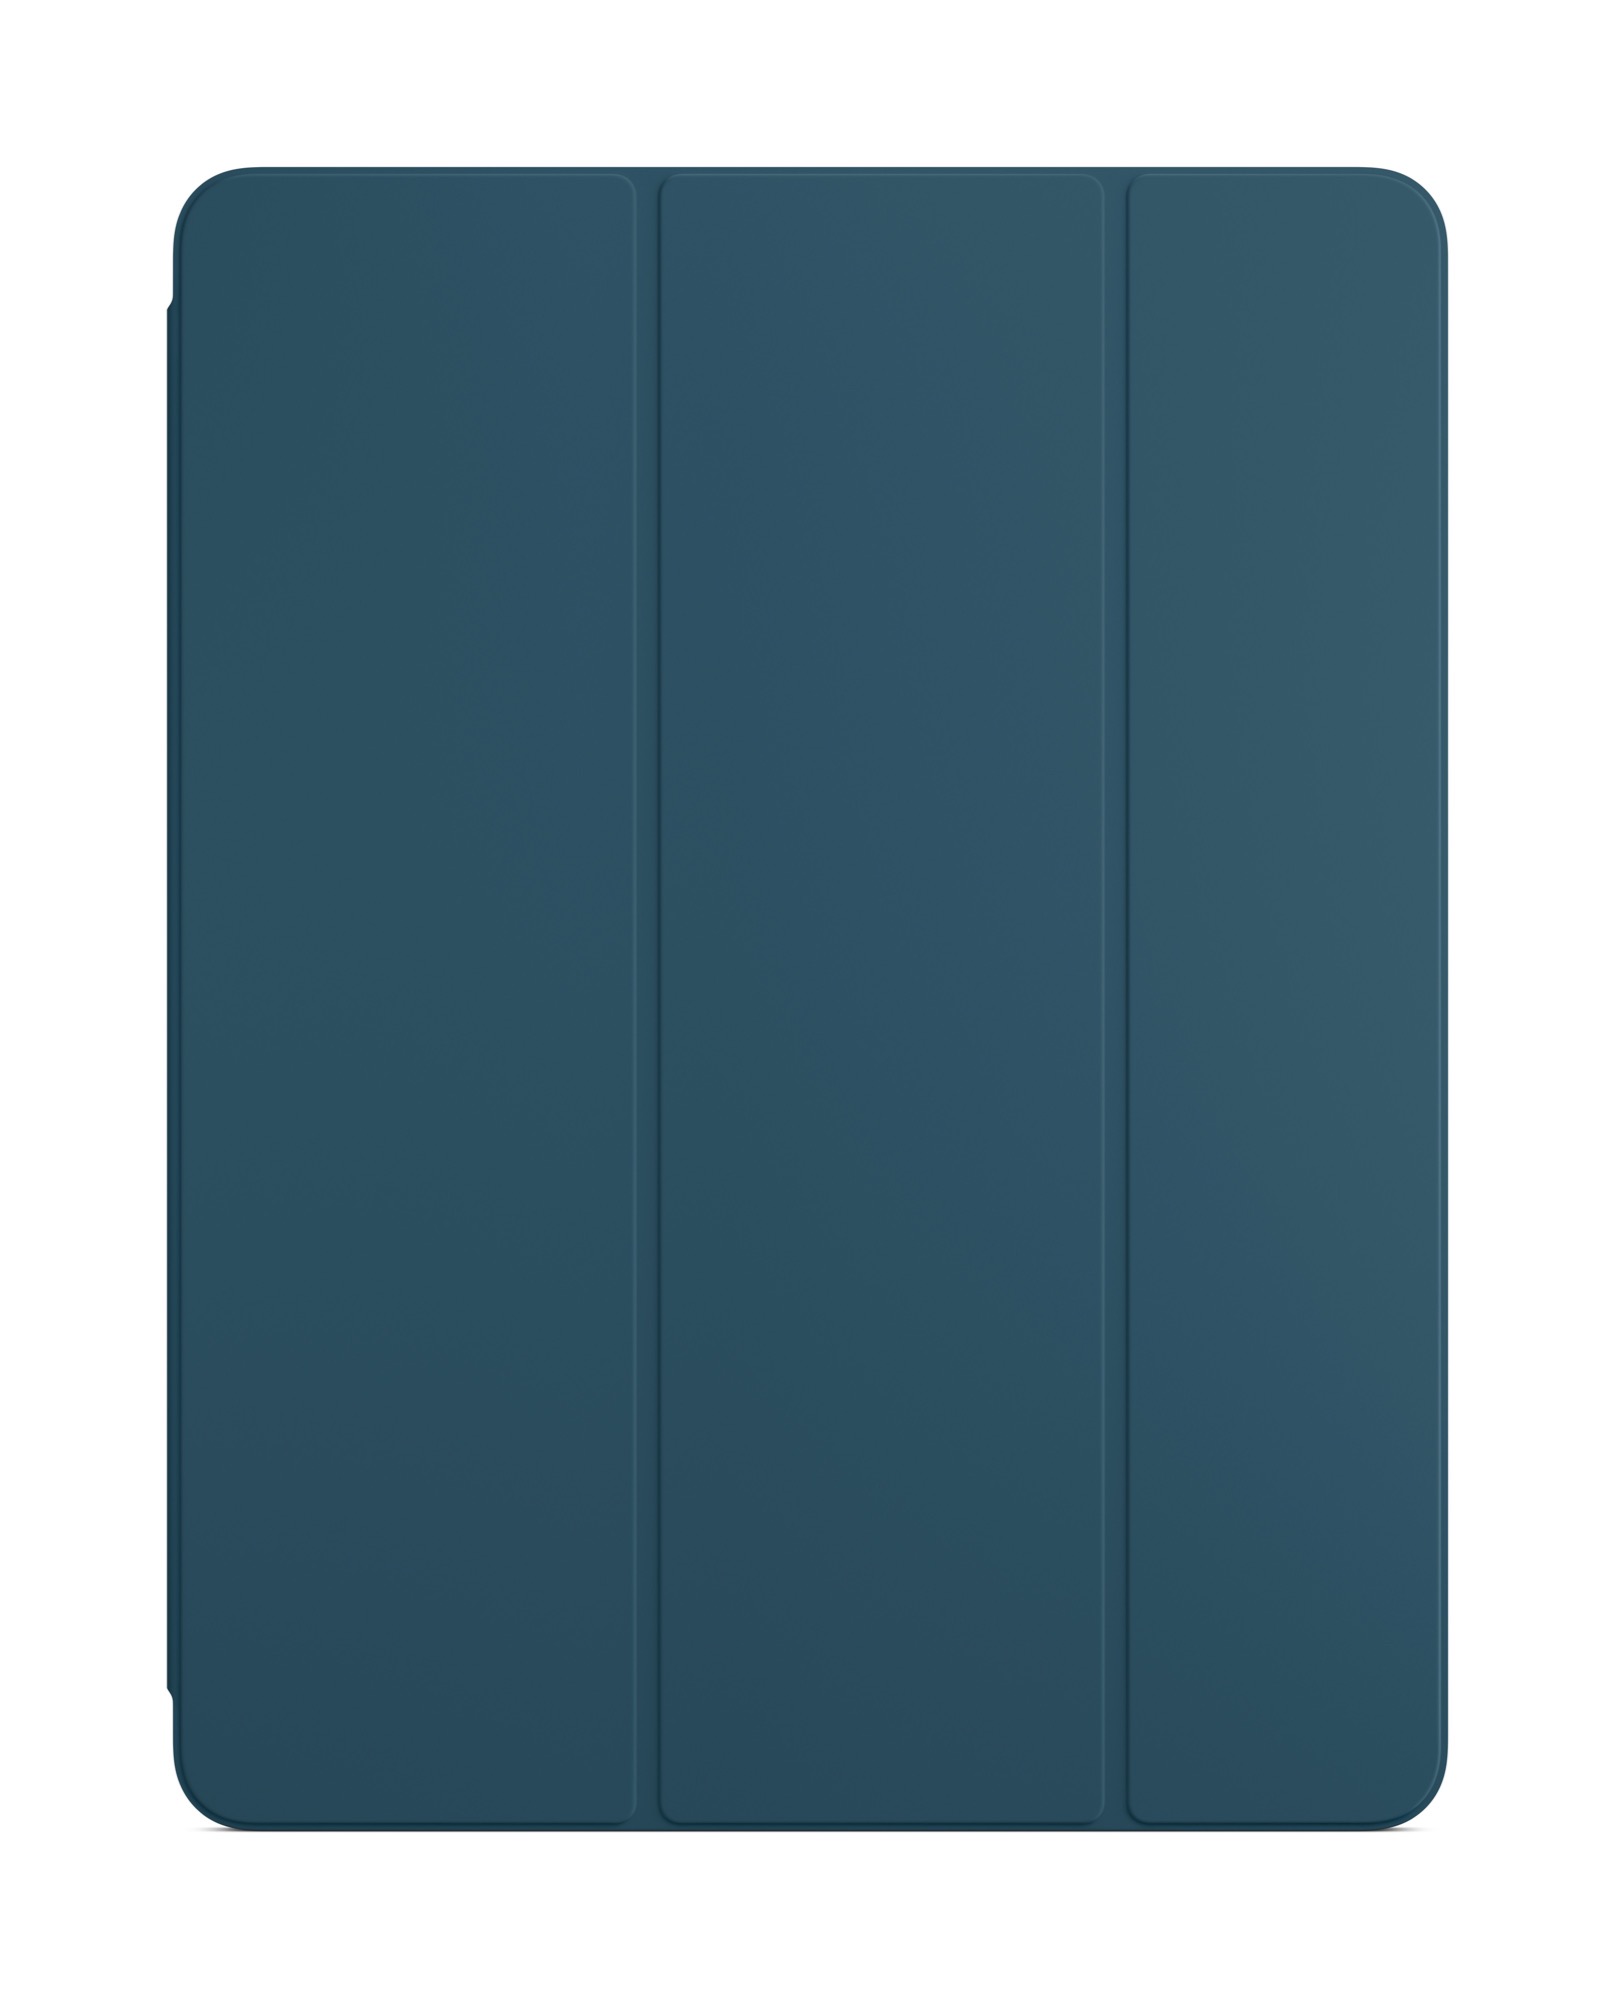 Smart Folio hatodik generációs 12.9" iPad Prohoz – tengerkék